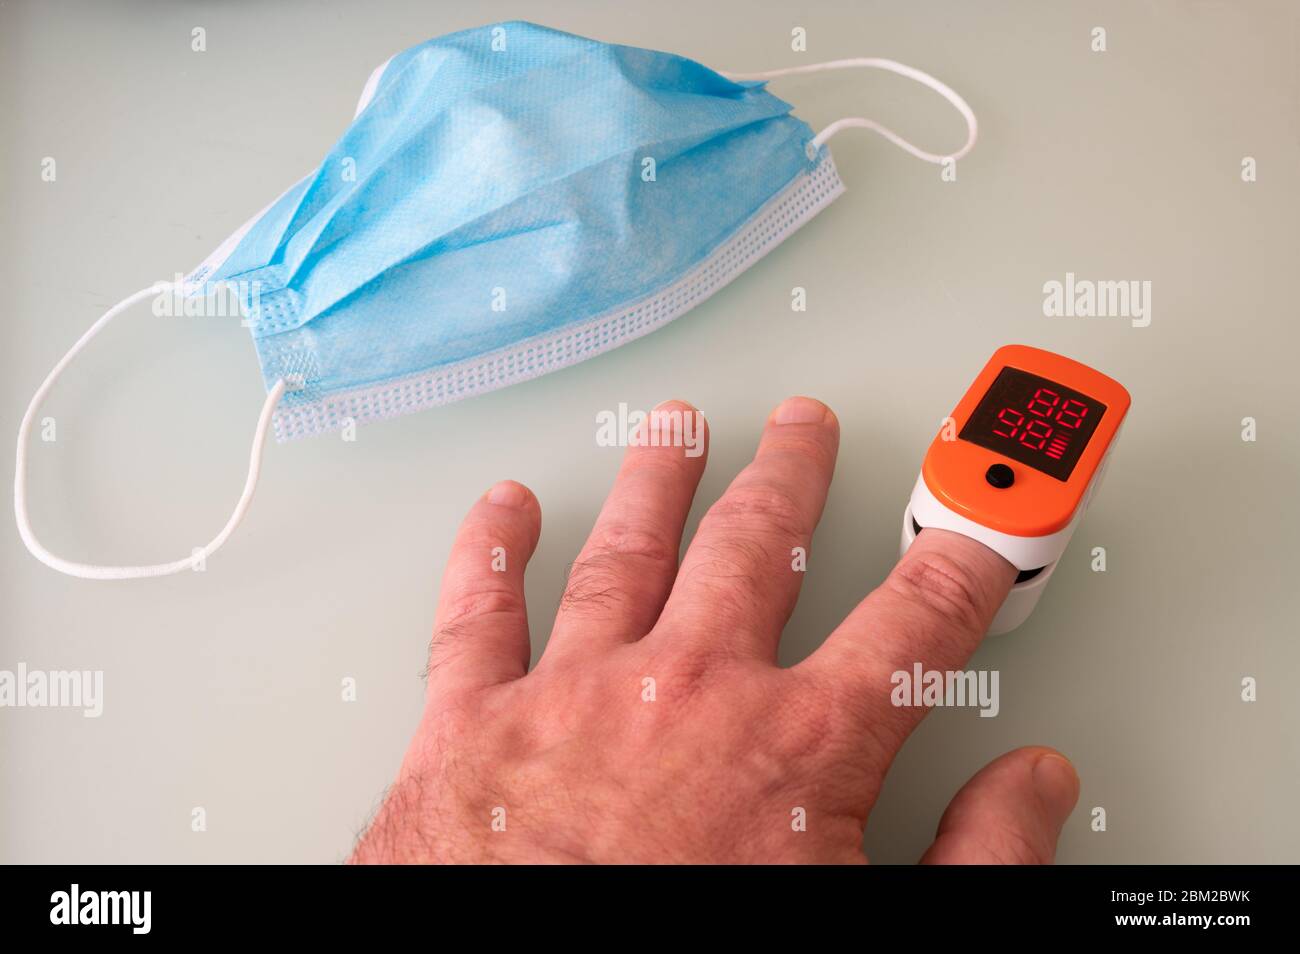 Digitales tragbares Pulsoximeter-Gerät zur Überwachung der Sauerstoffsättigung und Herzfrequenz im Blut. Medizinische Geräte für die Gesundheitsuntersuchung. Coronavirus sy Stockfoto